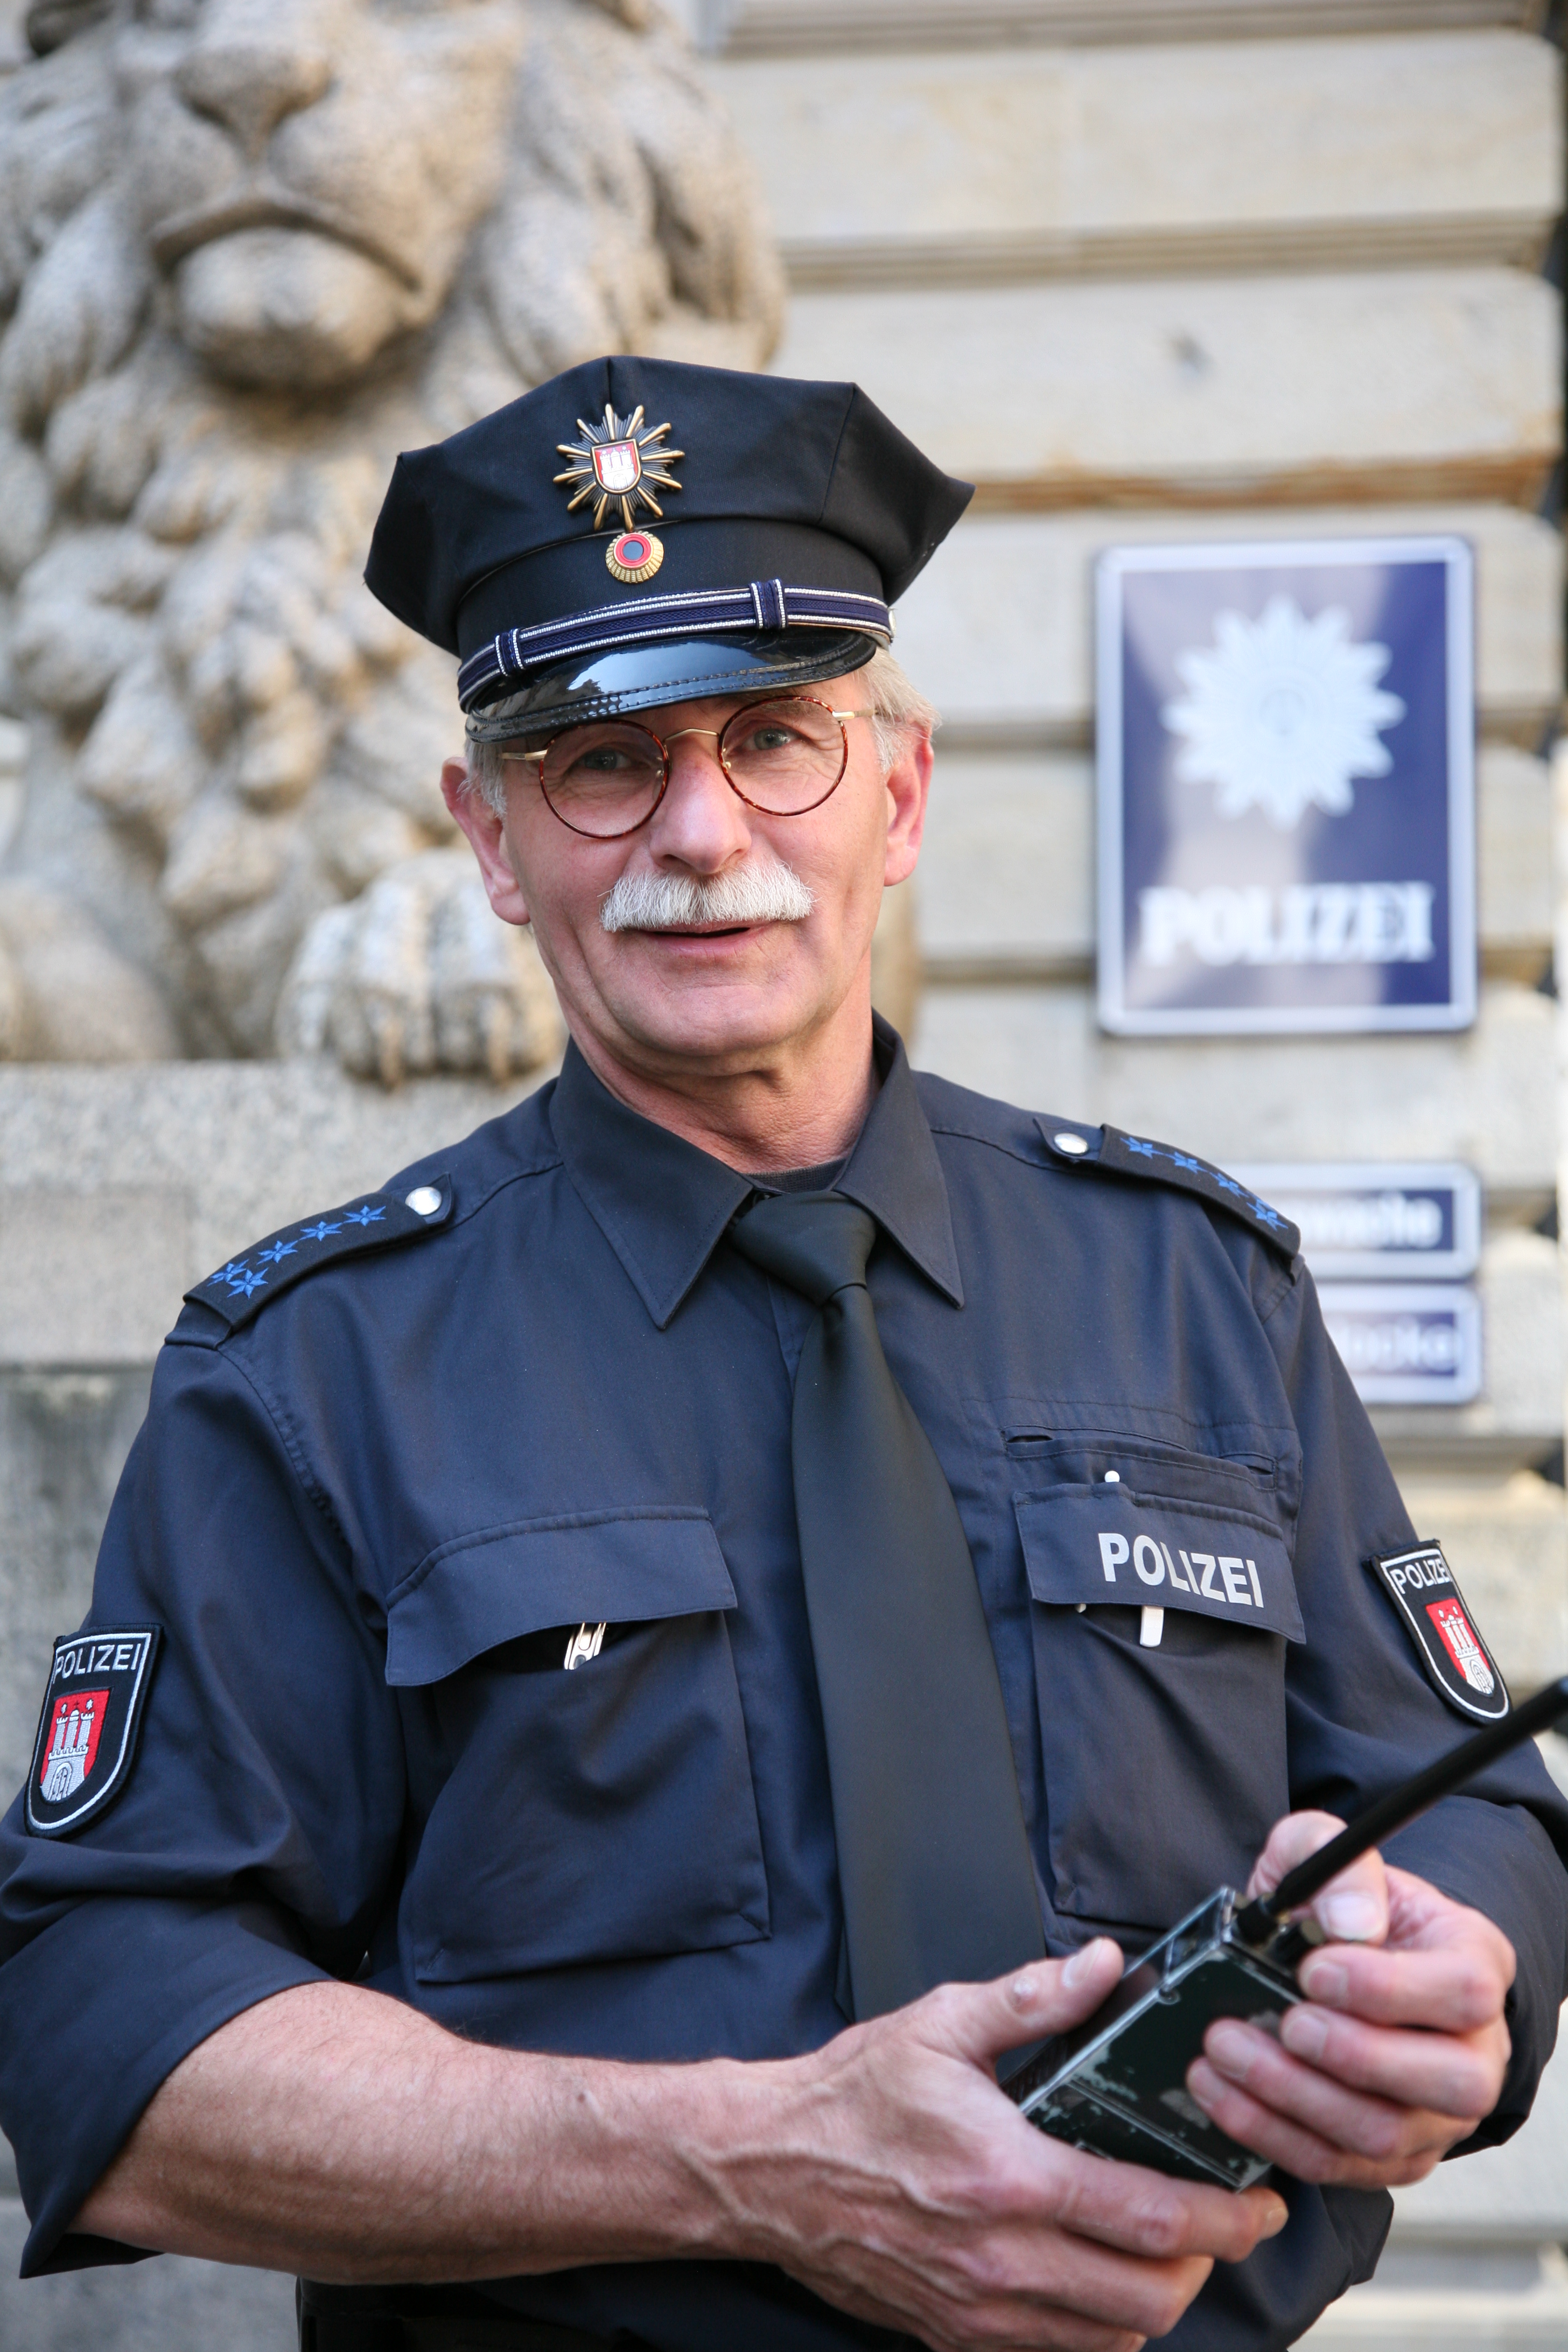 Rusga policial – Wikipédia, a enciclopédia livre